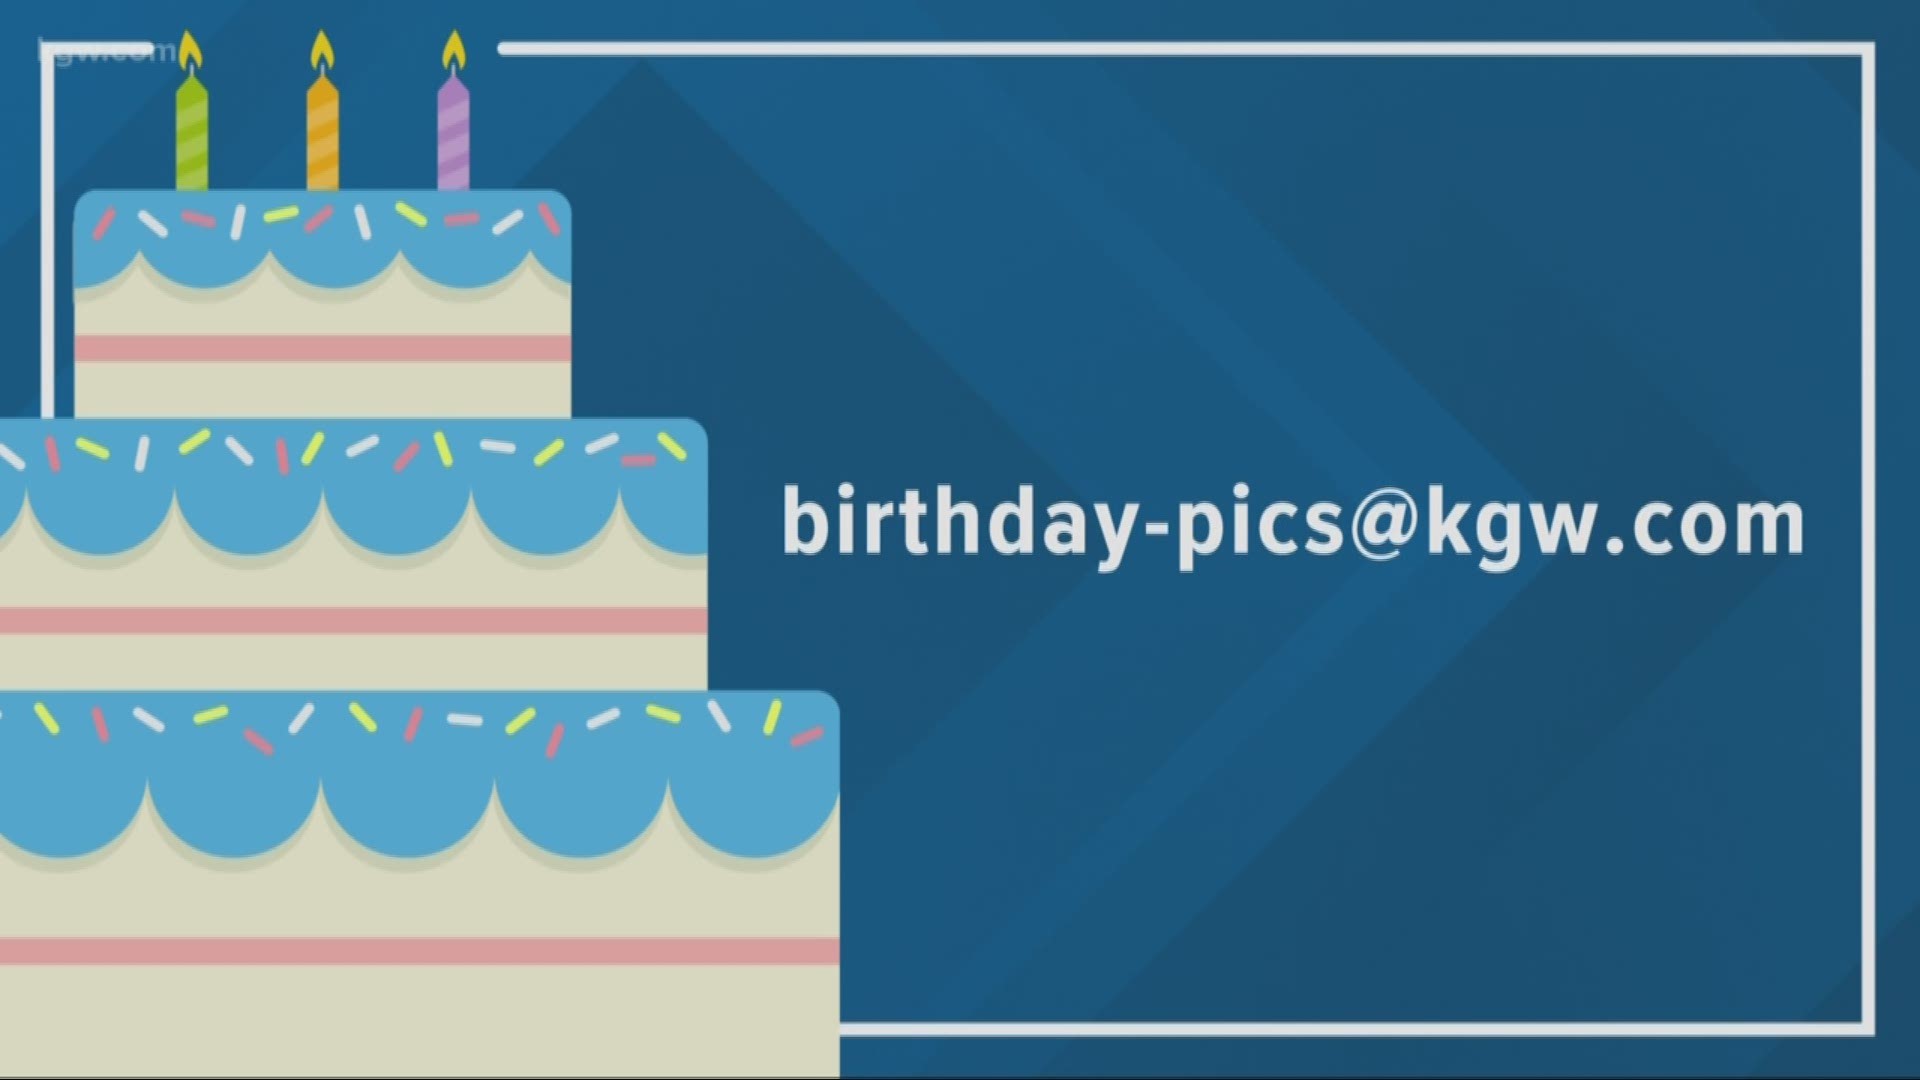 KGW viewer birthdays: 10-11-19